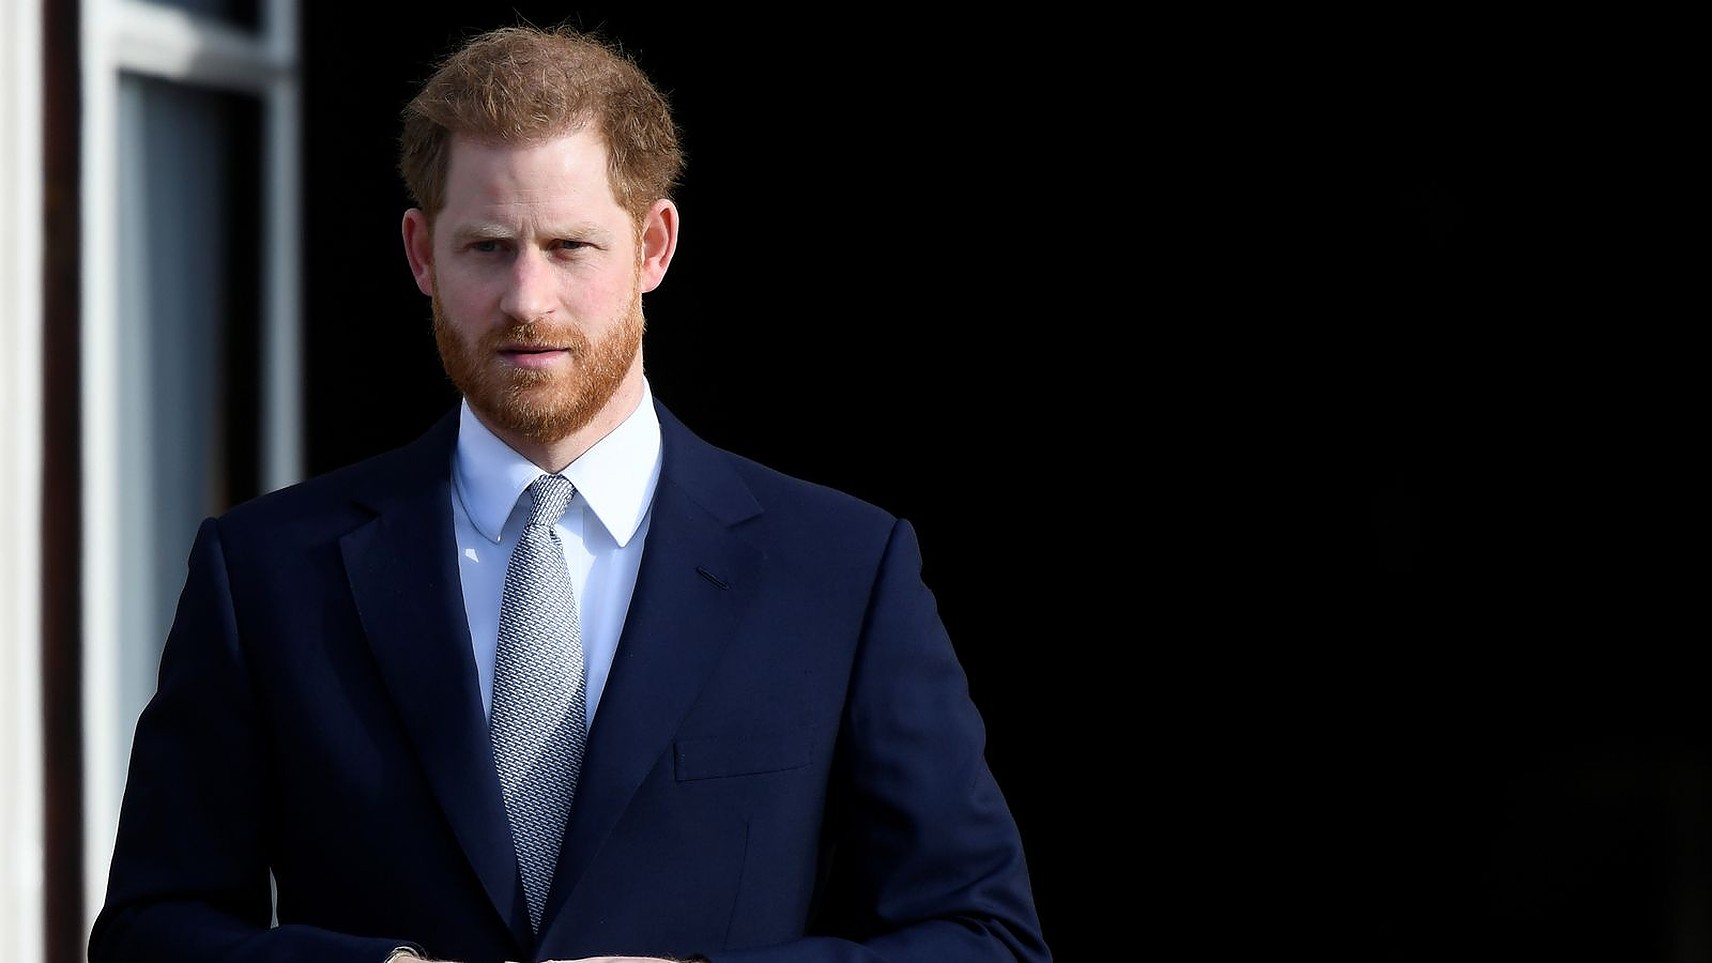 Este știrea momentului! Prințul Harry a deschis un proces de calomnie la Înalta Curte împotriva Daily Mail